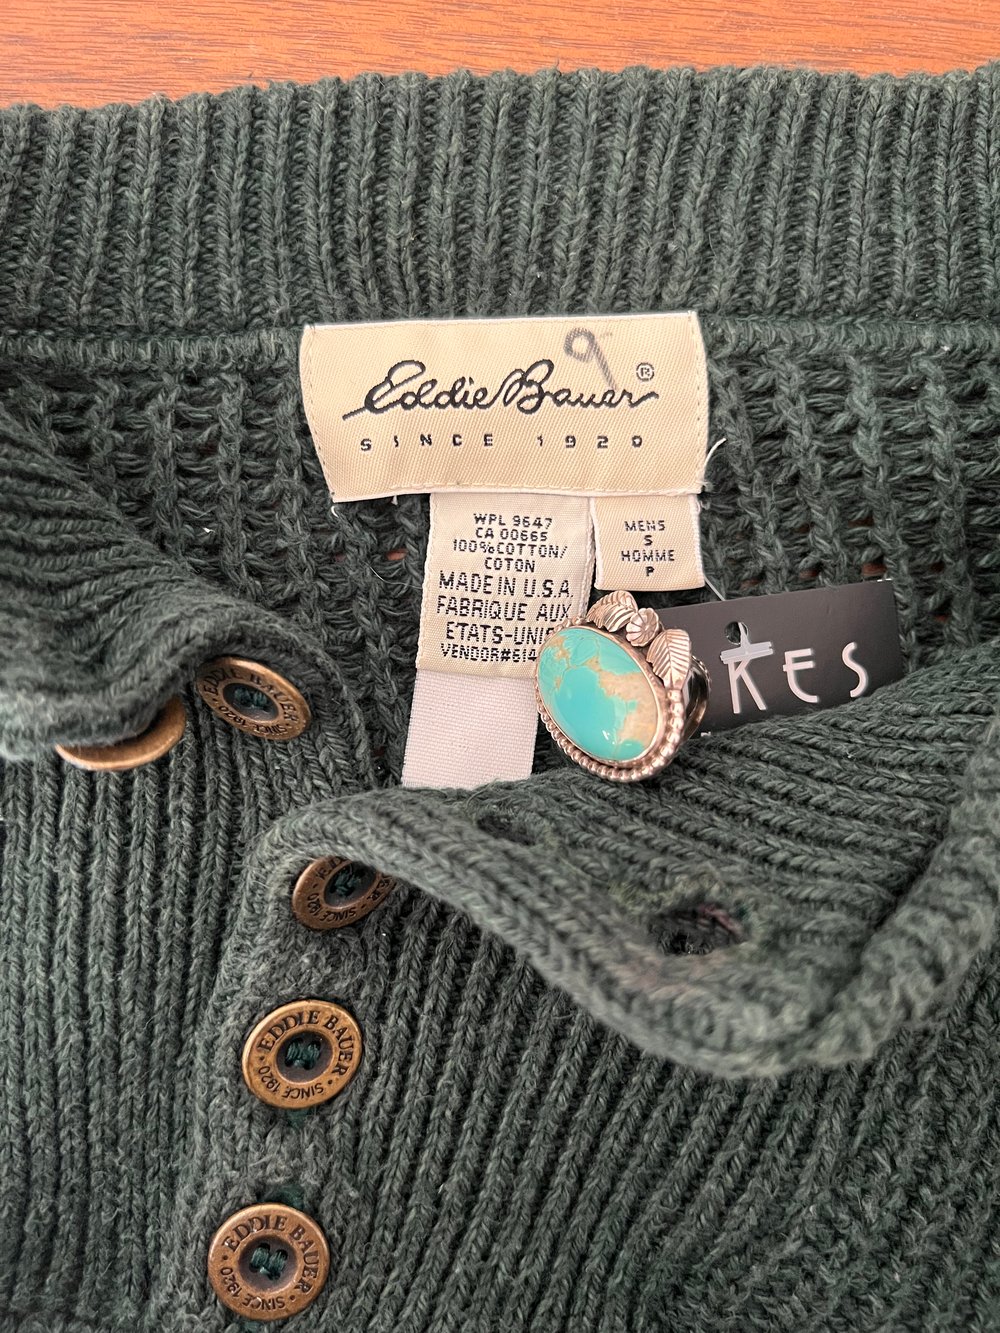 Vintage Eddie Bauer Green Cotton Sweater (L)